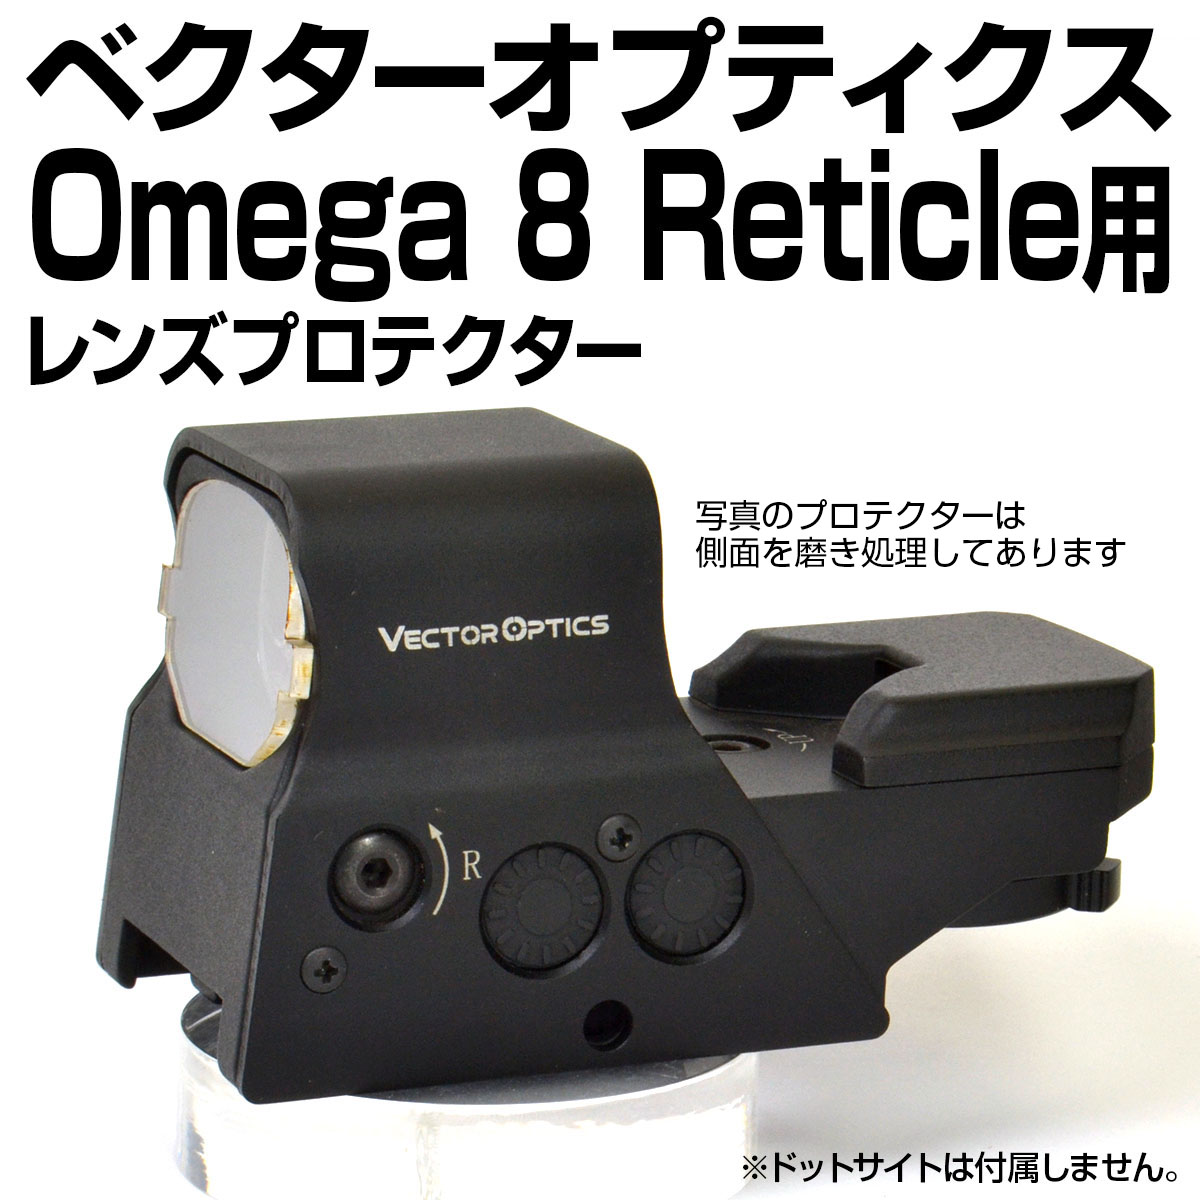 VectorOptics OMEGA 8 Reticle用プロテクター | あきゅらぼ通販